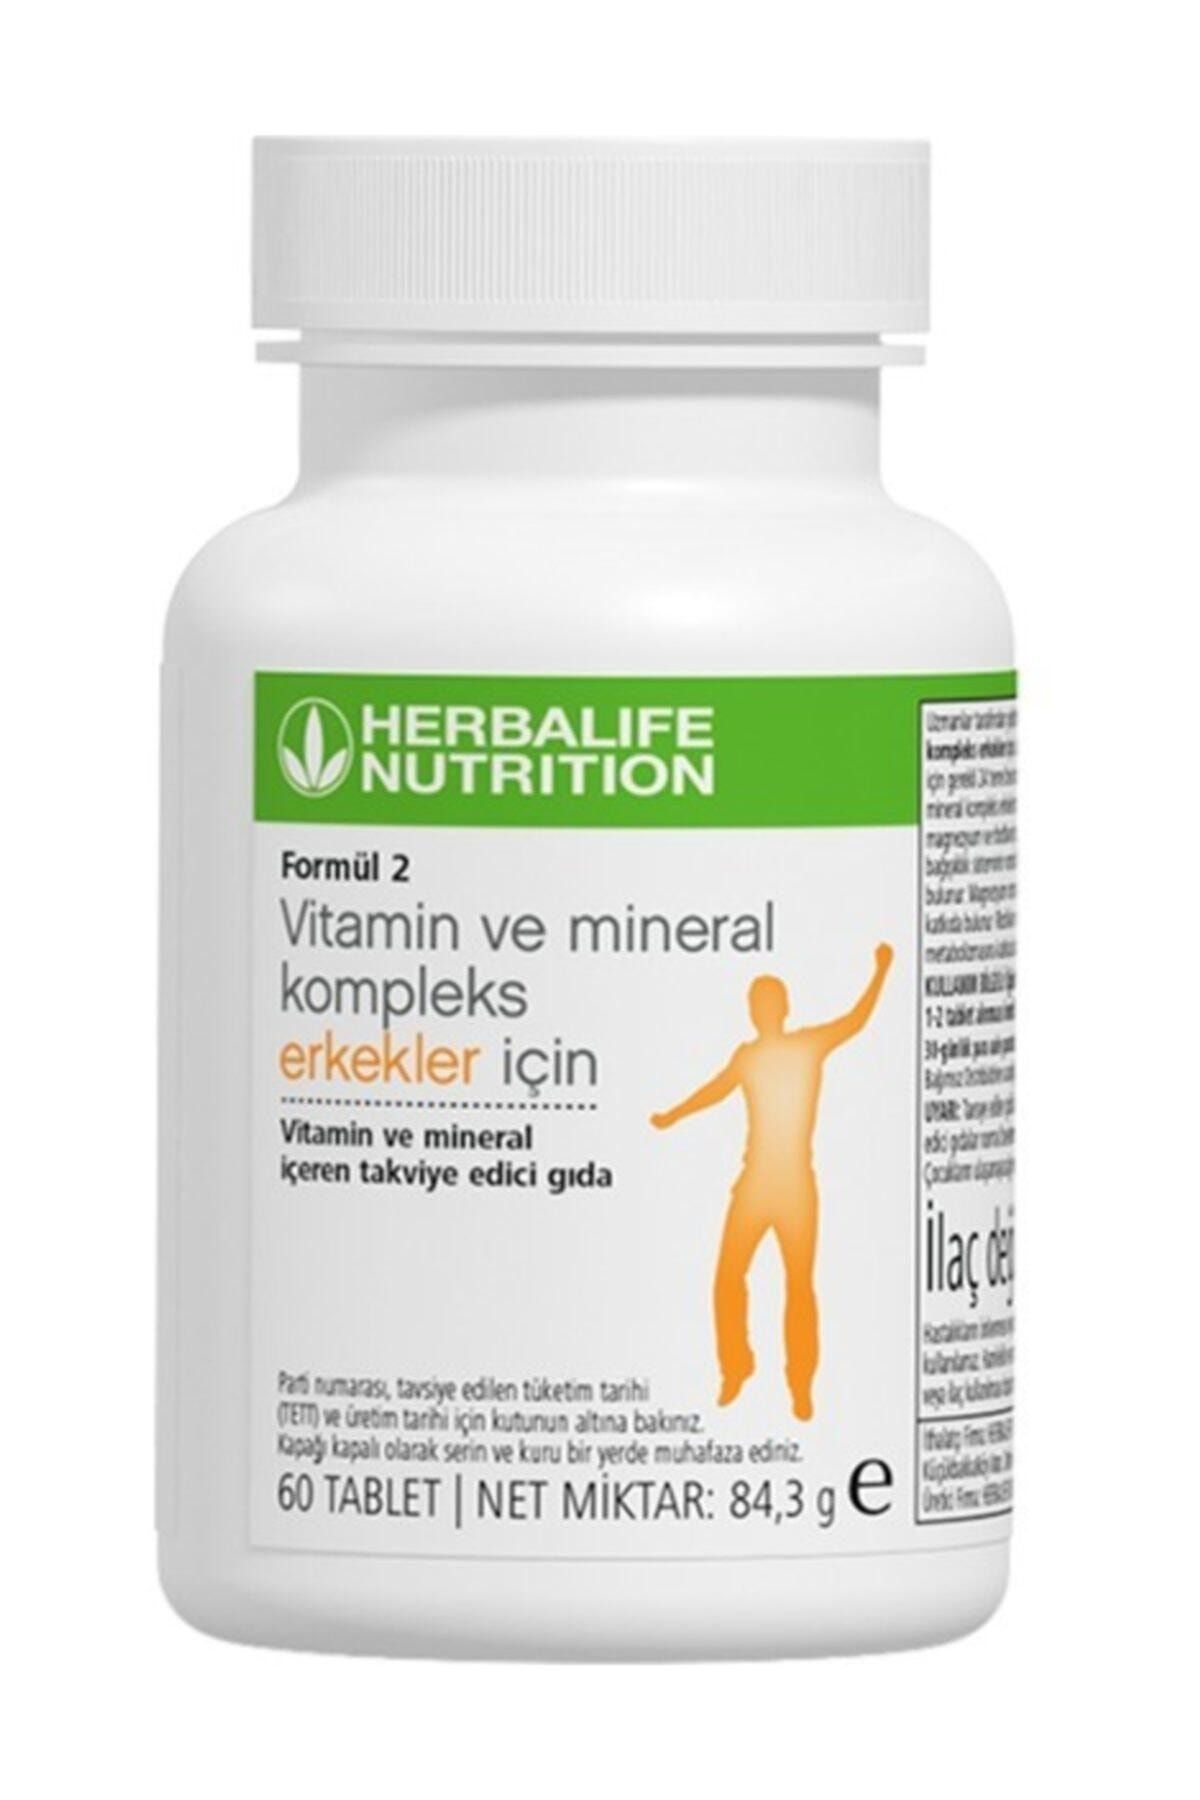 Herbalife Vitamin Ve Mineral Formül 2 Vitamin Ve Mineral Kompleks Erkekler Için 60 Tablet